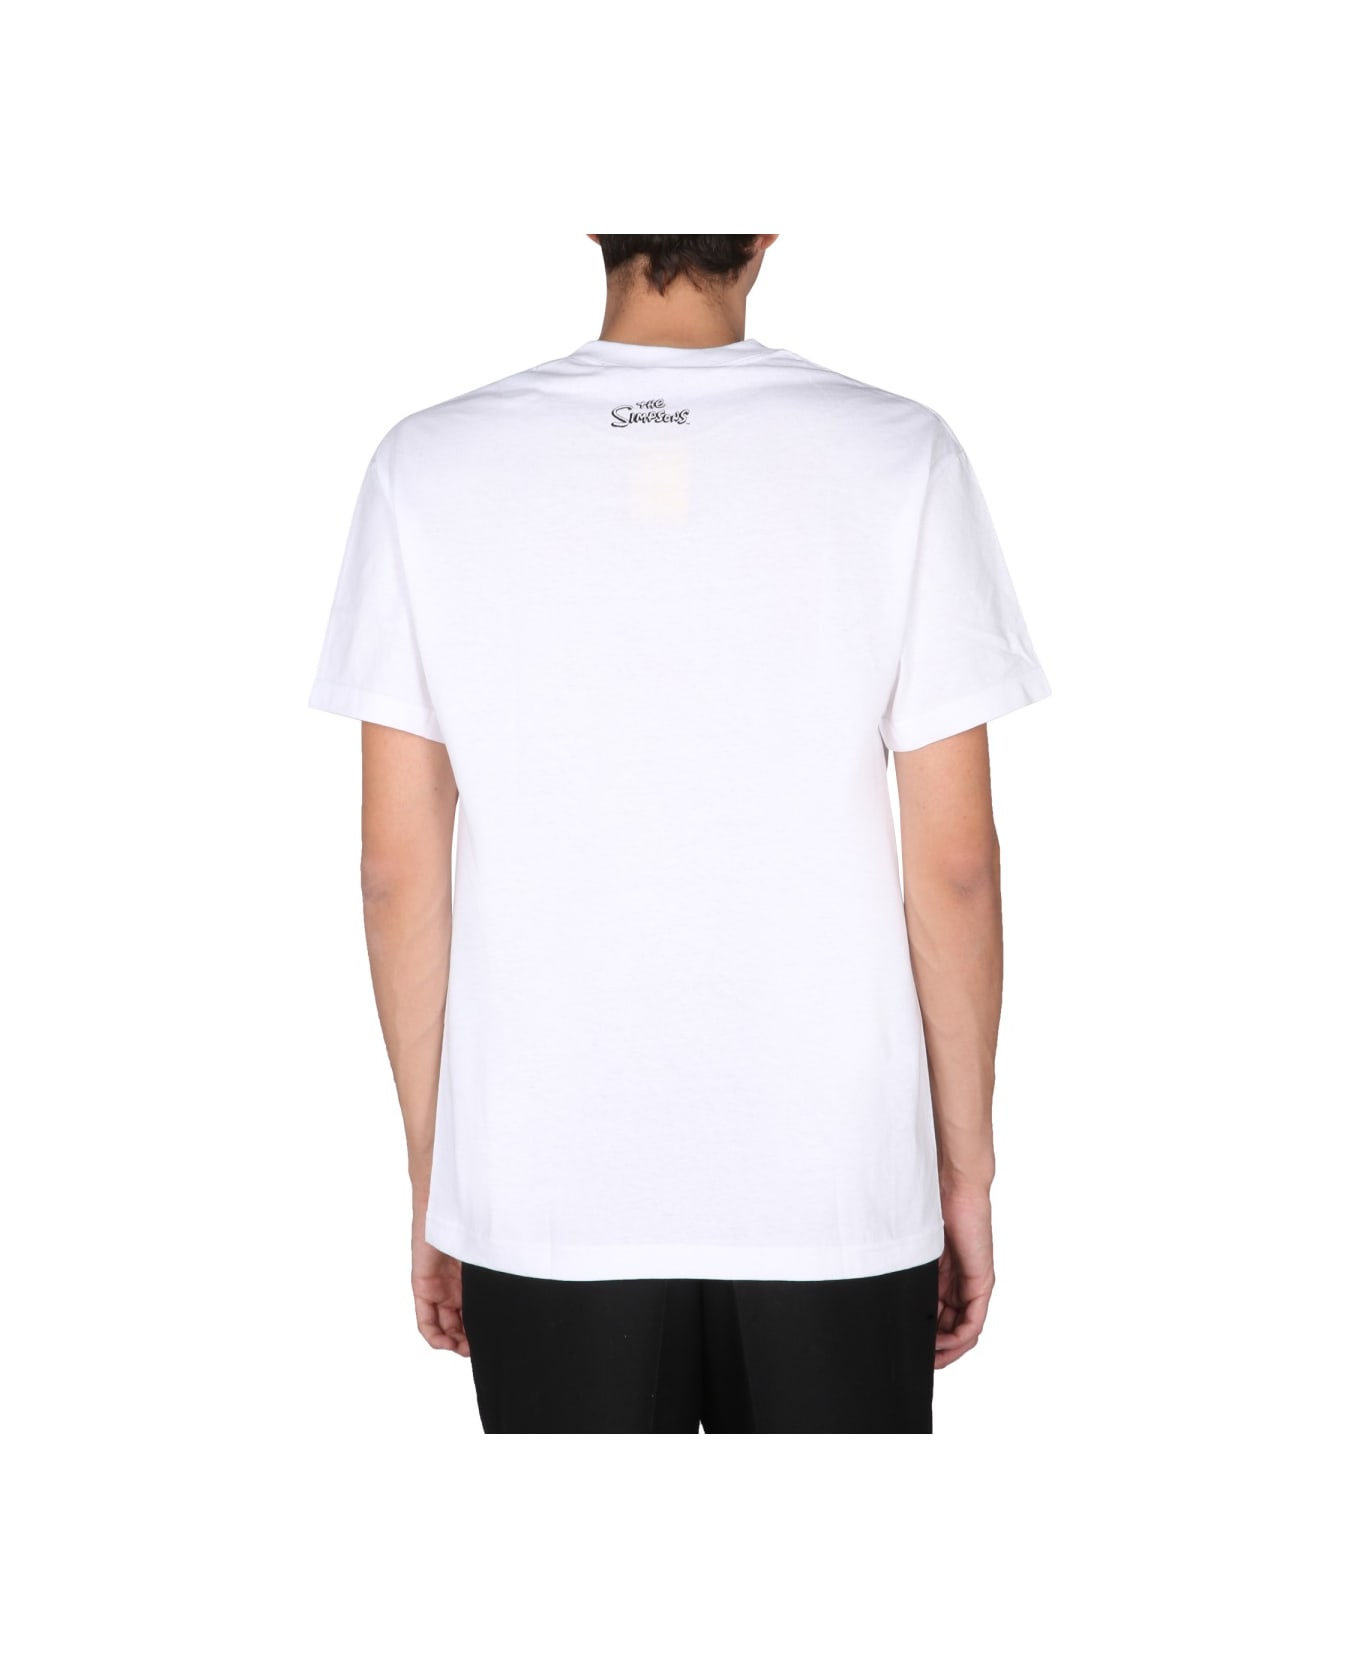 Market "devil Bart" T-shirt - WHITE Tシャツ